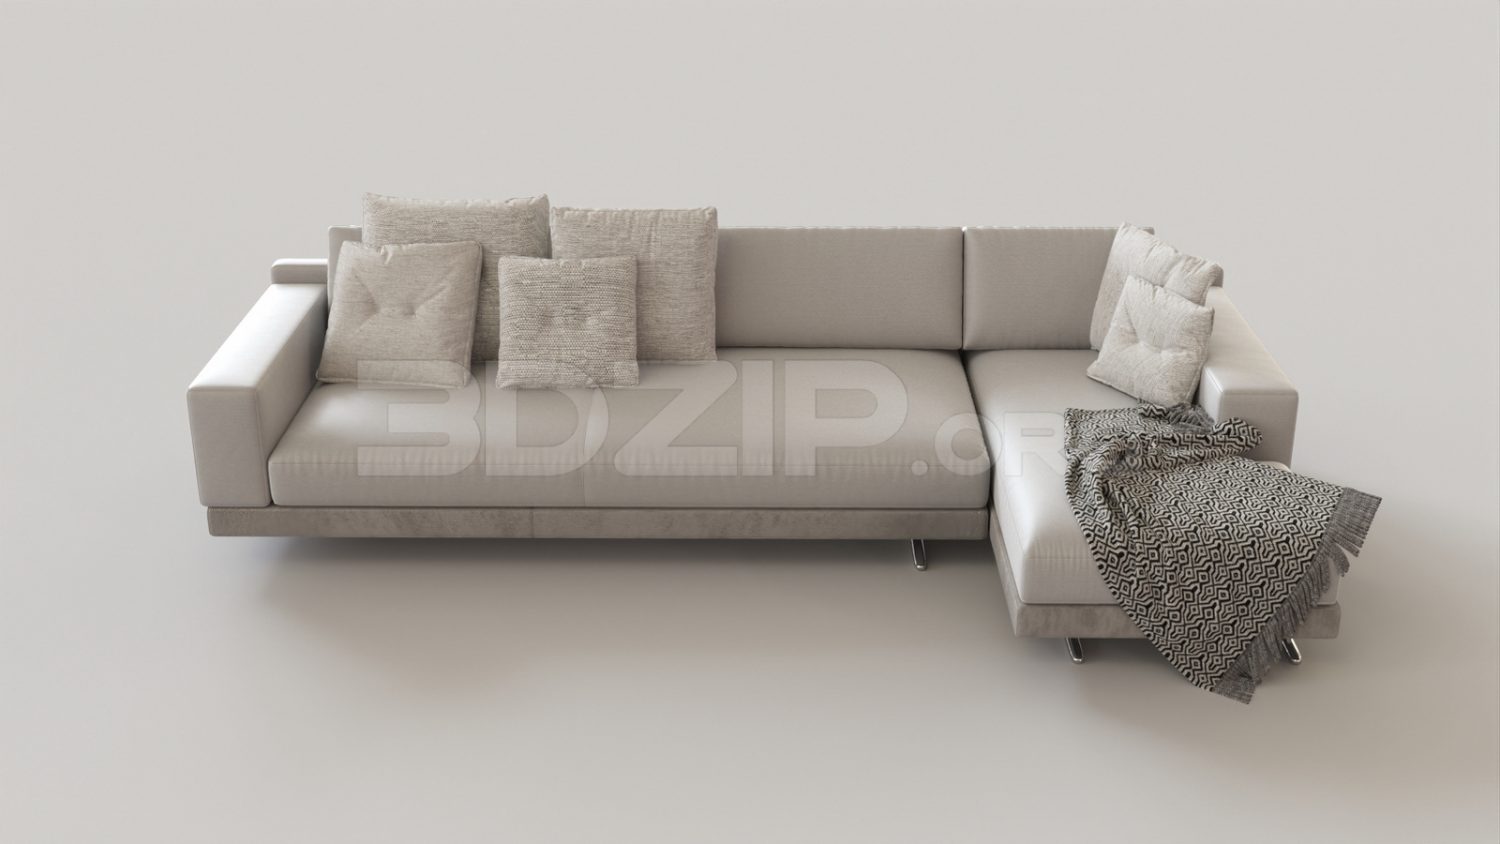 5214. Free 3D Sofa Model Download